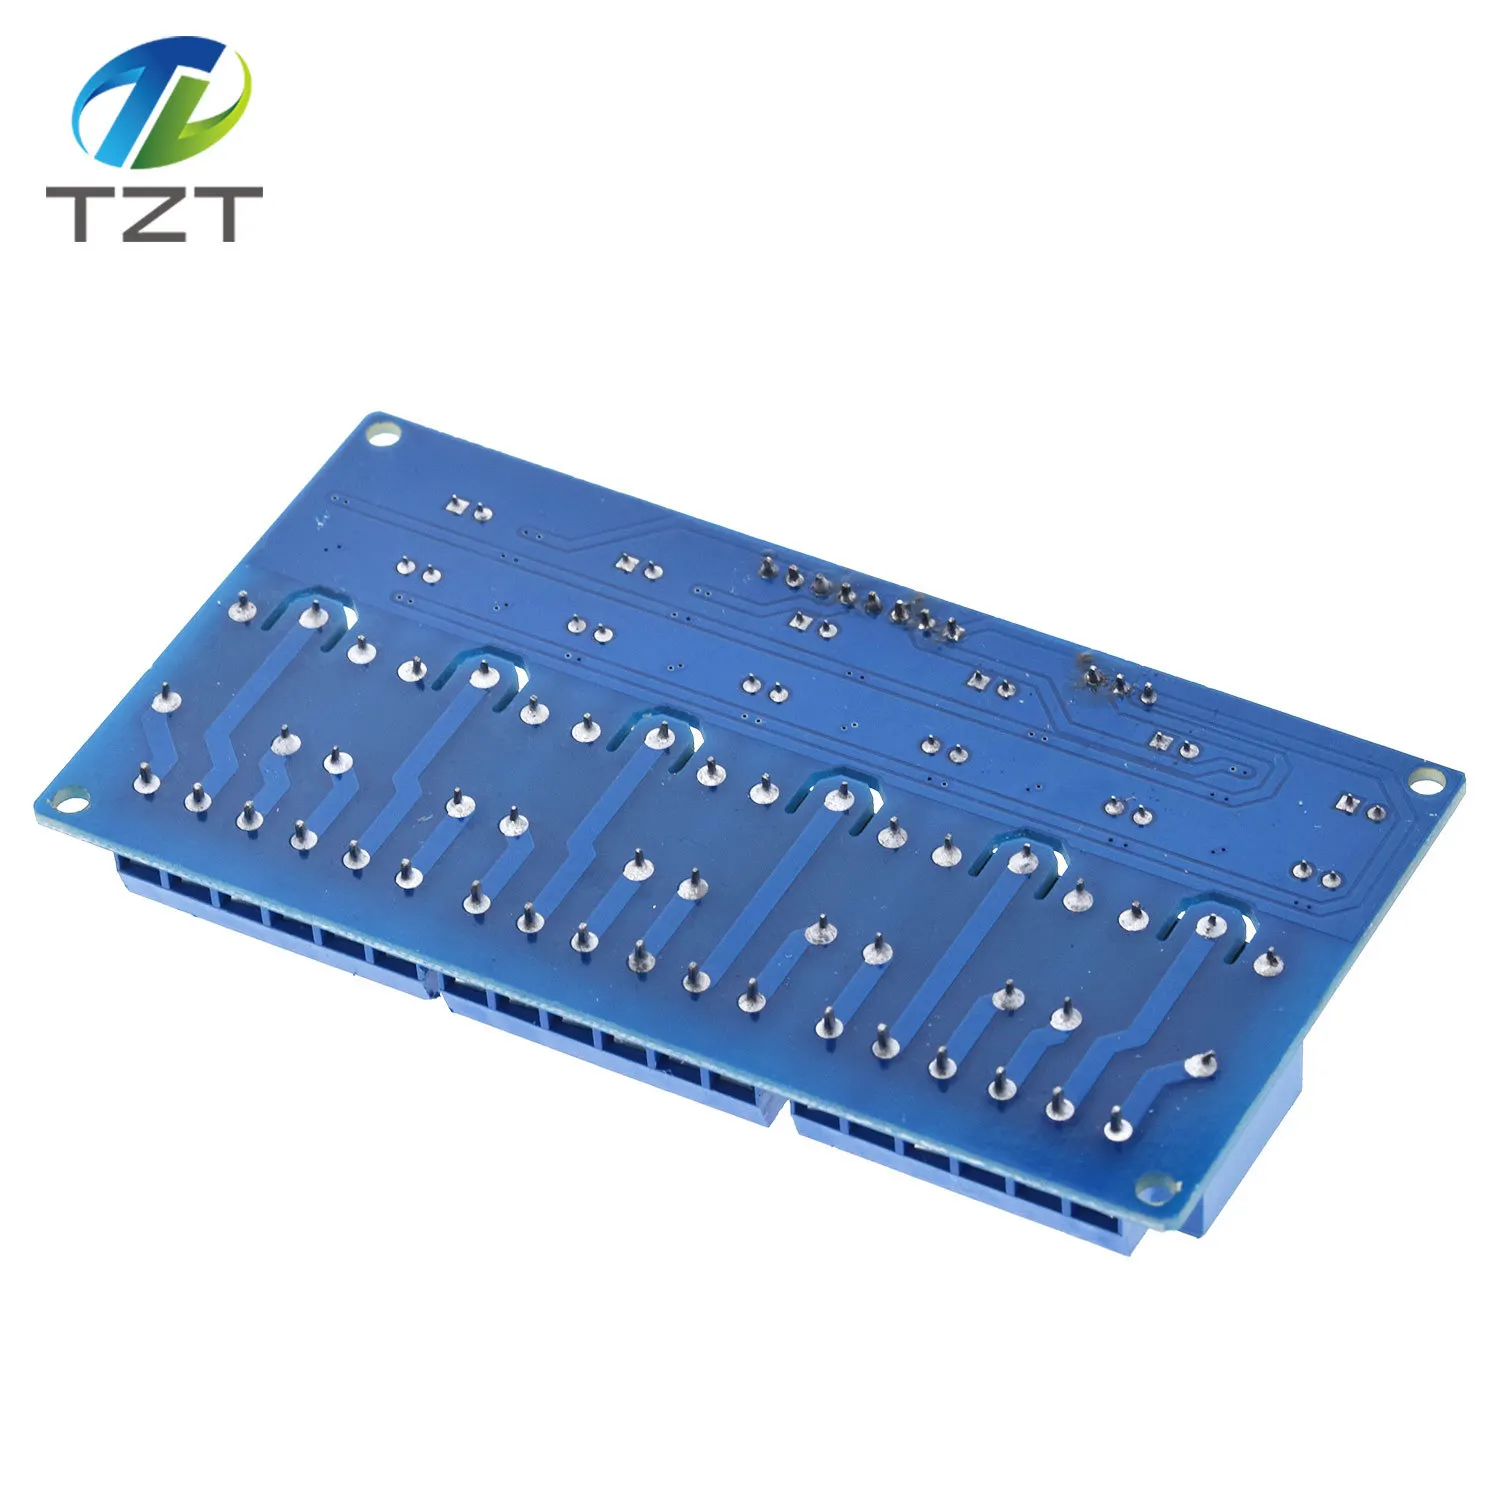 TZT 5 v 1 2 4 6 8 канала релейный модуль с оптопарой. Реле Выход 1/2/4/6/8 способ релейный модуль 12 V Для arduino синий